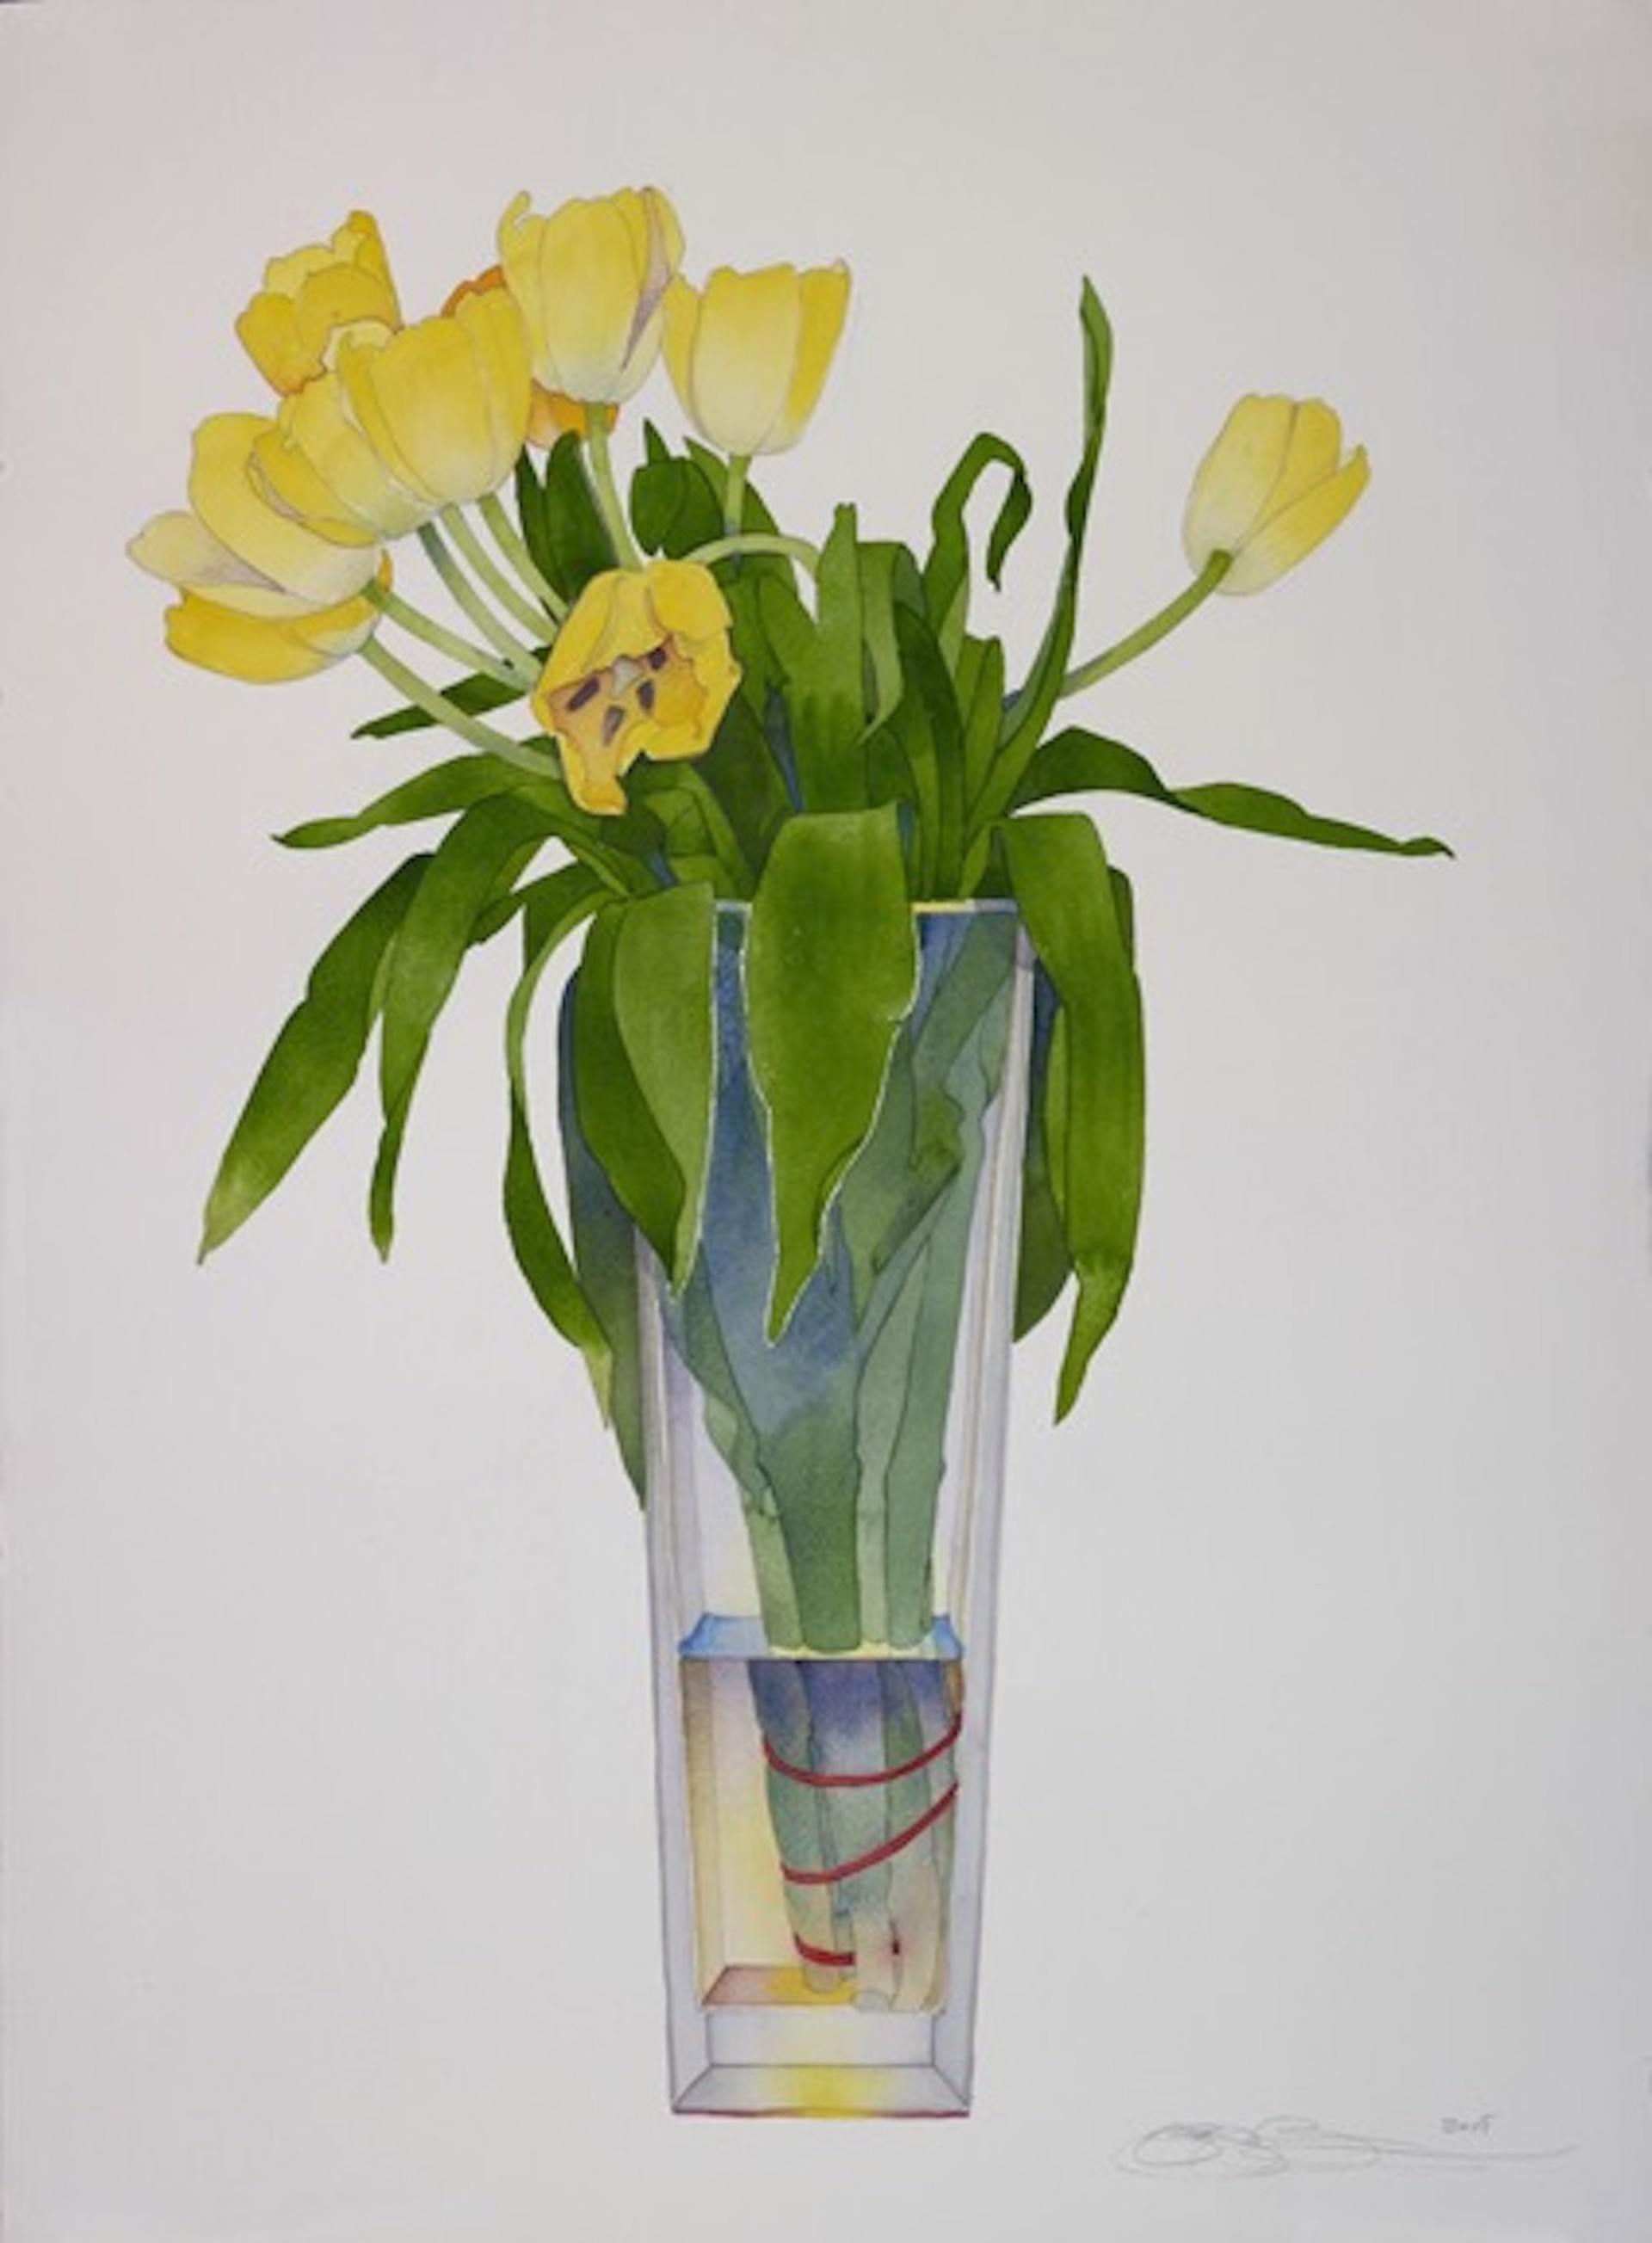 Yellow Tulips in Tall Vase by Gary Bukovnik